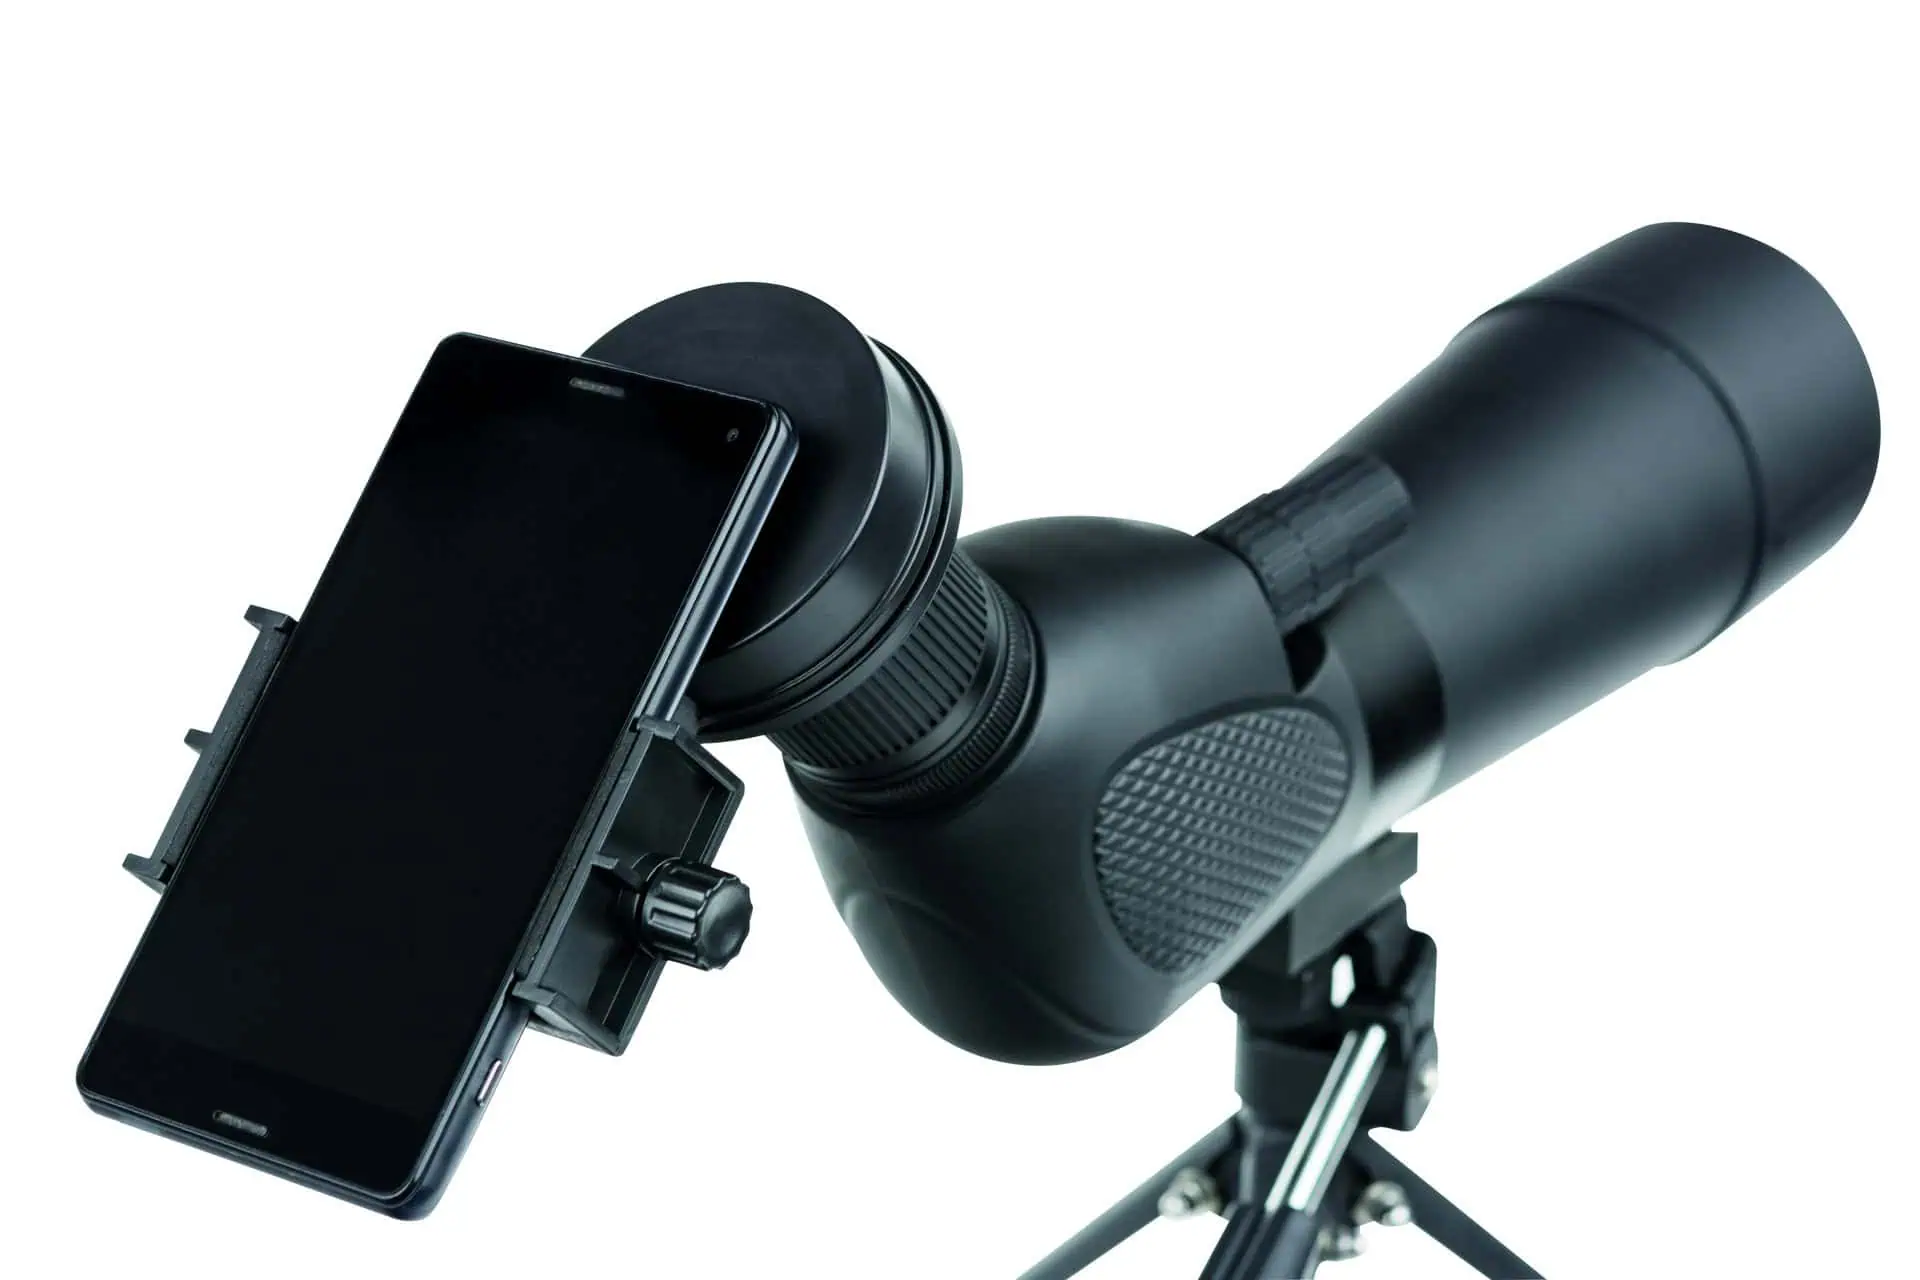 Adattatore fotografico universale per smartphone SA-1 per cannocchiali